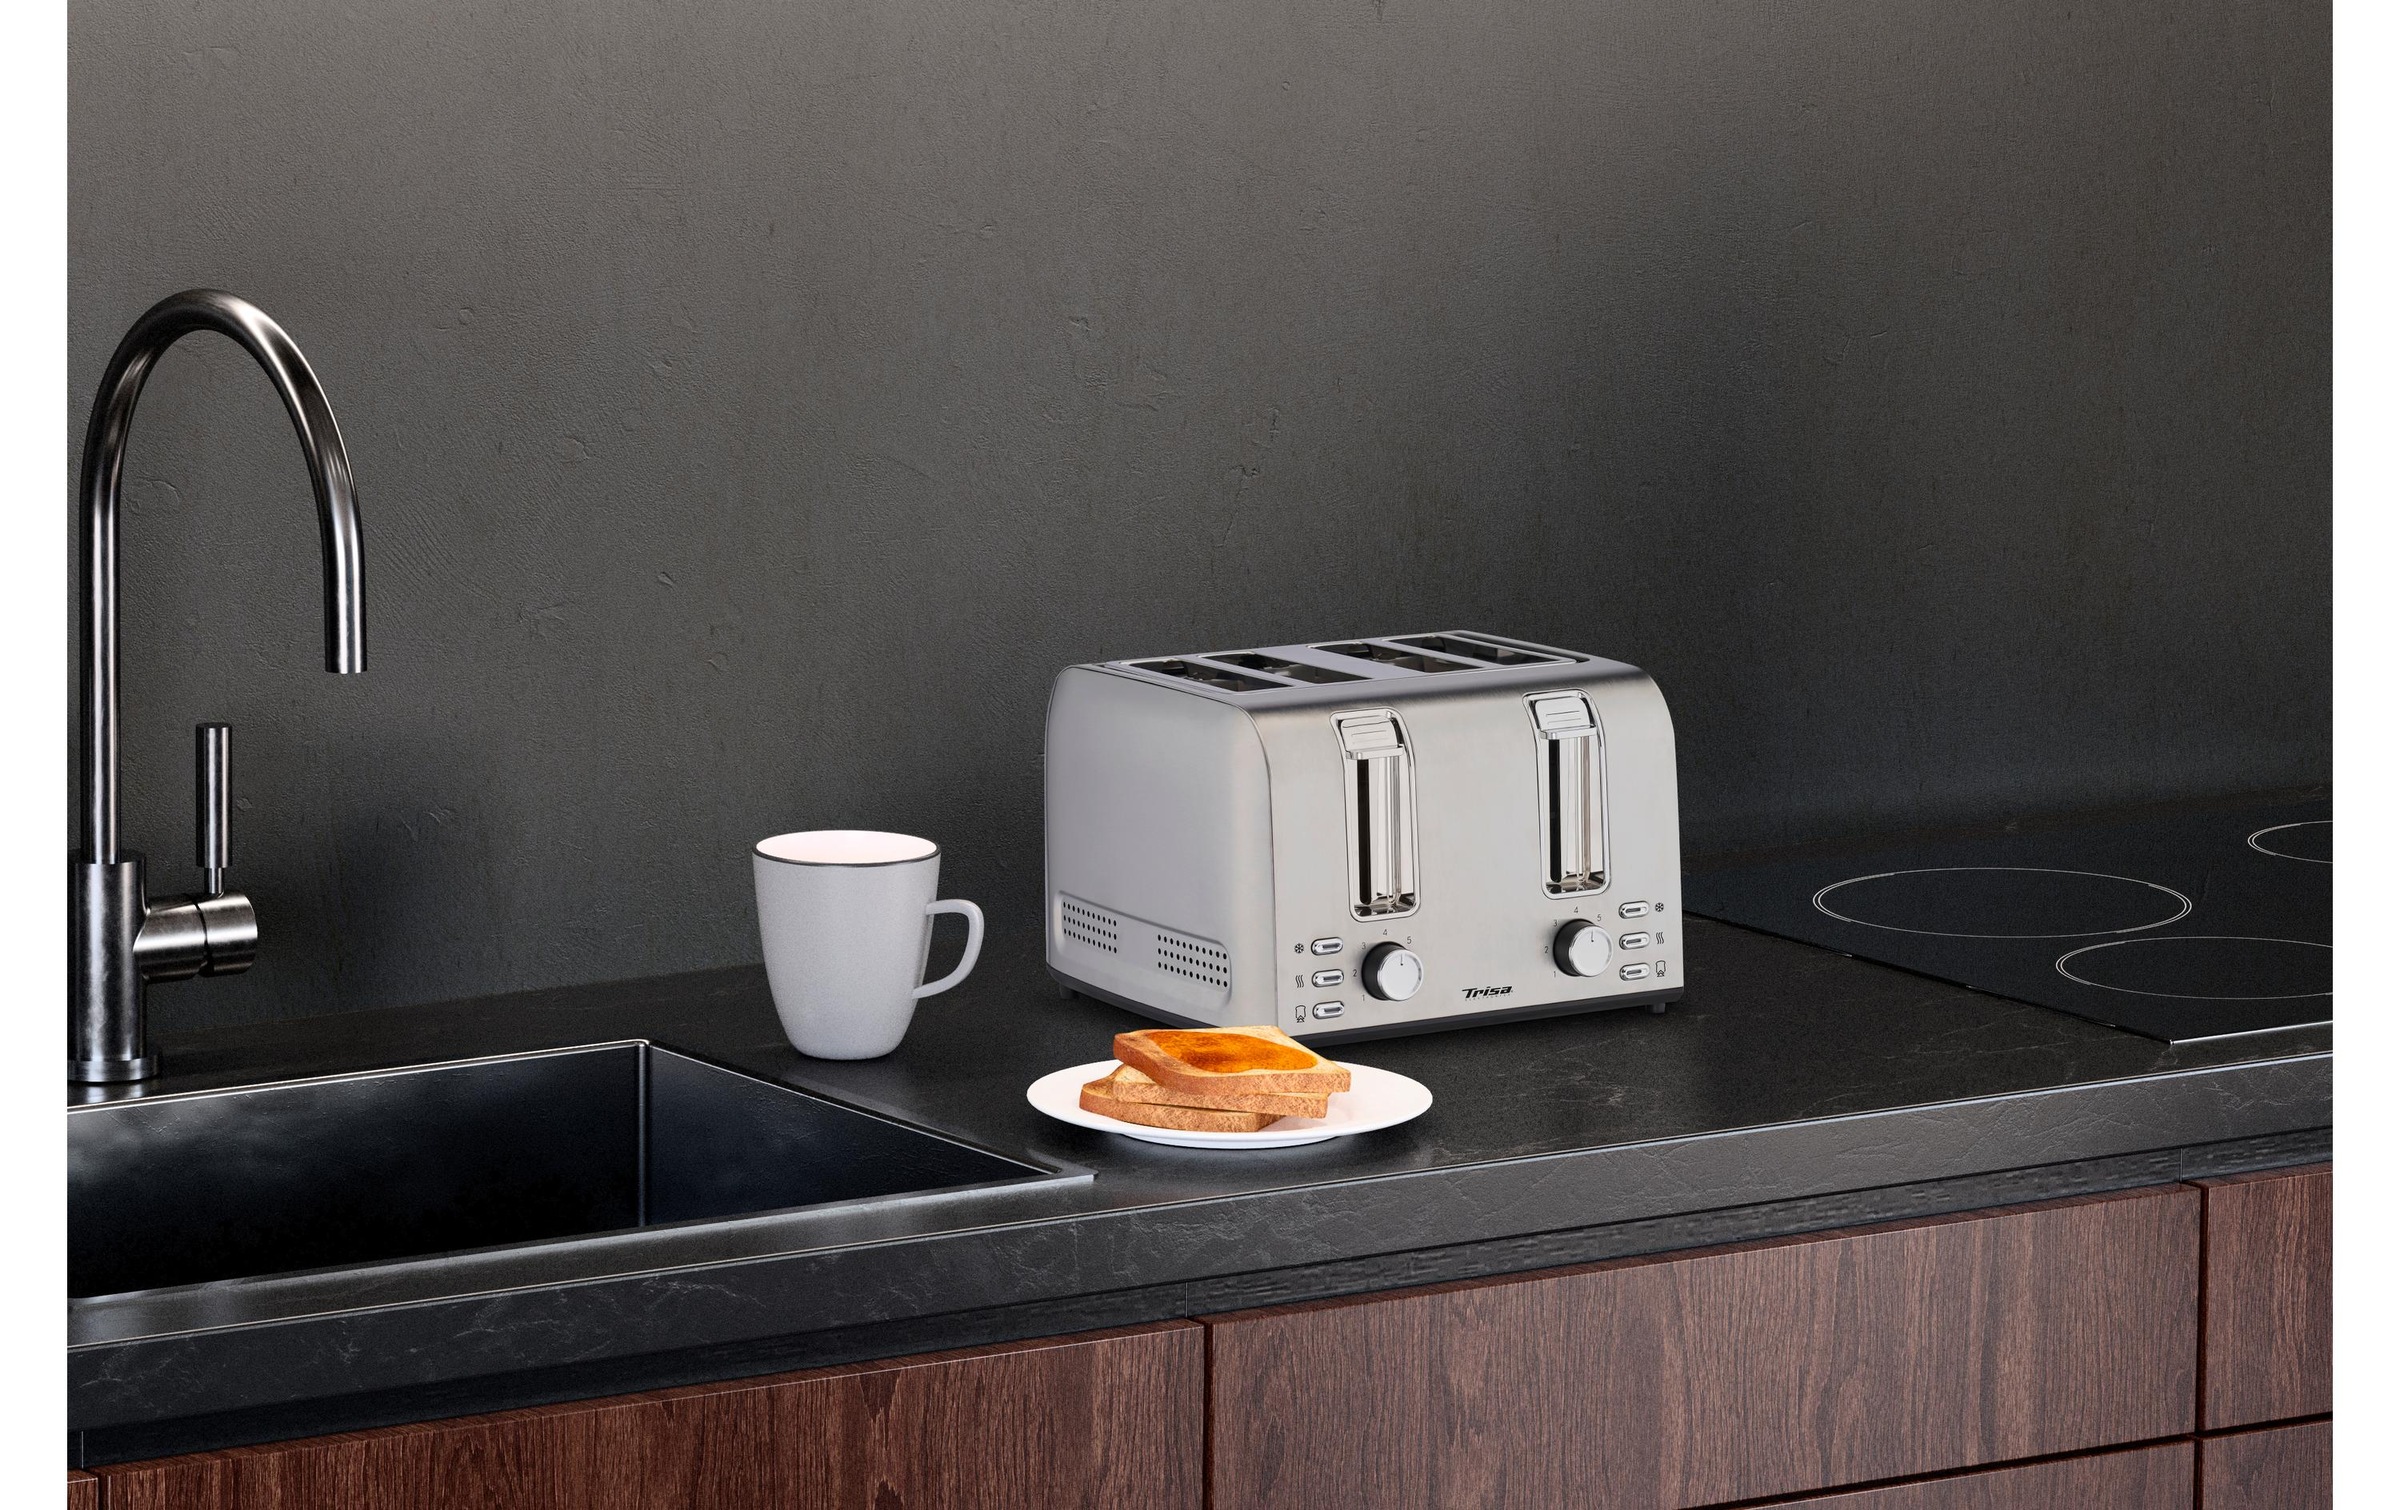 Trisa Toaster »Toast 4 All Edelstahl«, 4 Schlitze, für 4 Scheiben, 1500 W